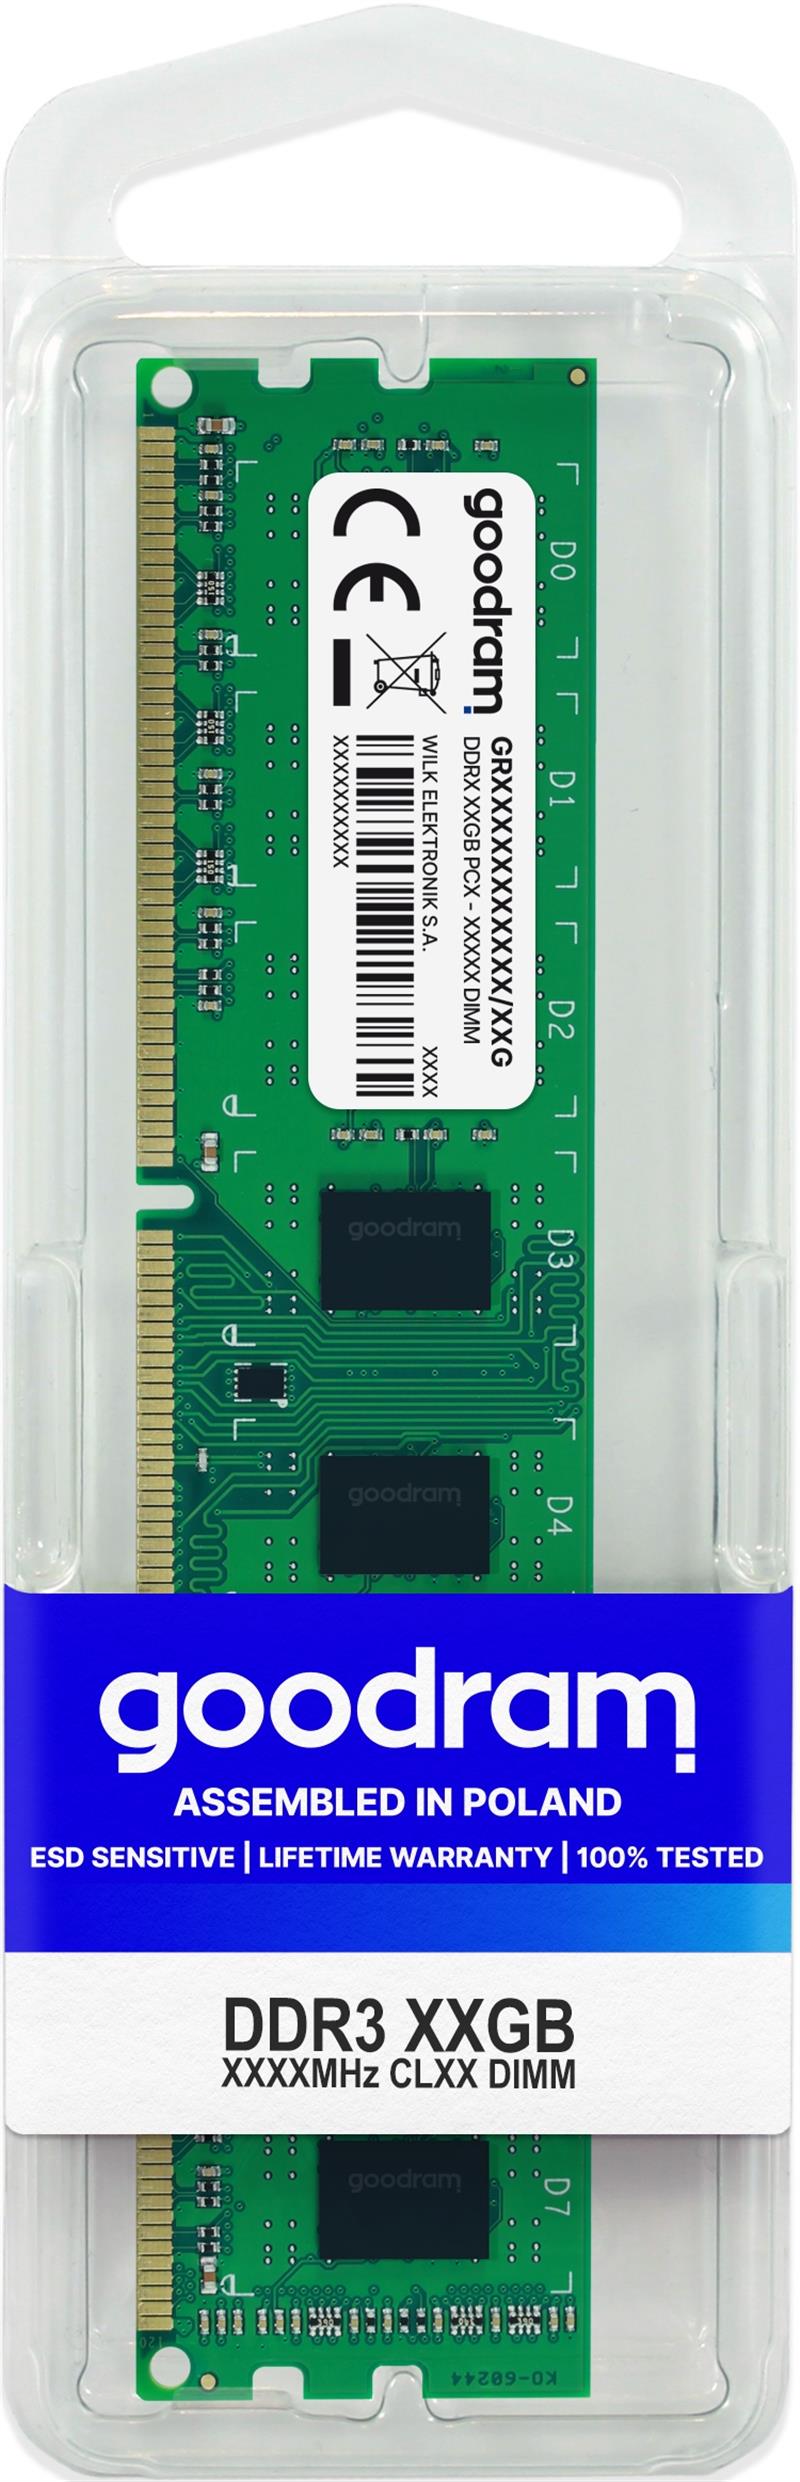 Goodram GR1600D364L11/4G geheugenmodule 4 GB 1 x 4 GB DDR3 1600 MHz